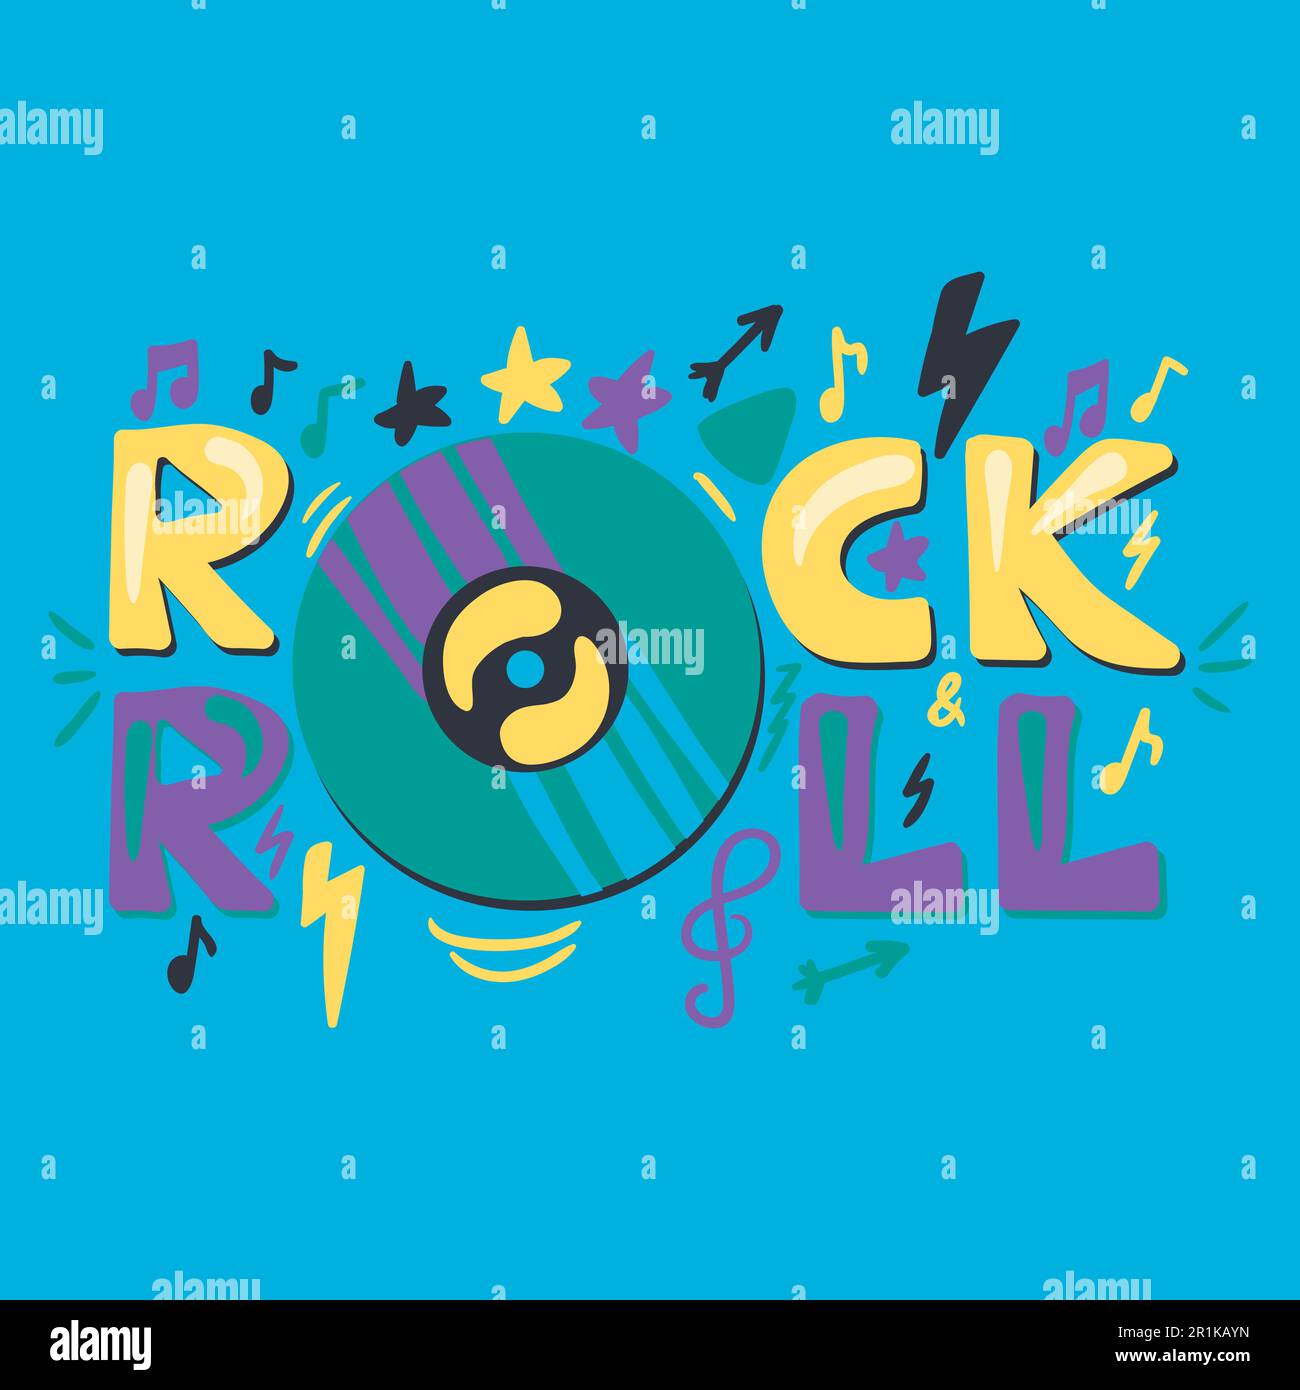 Vorlage für Disco- und Retro-Konzert-Poster. Rock 'n' Roll, handgezeichnete Schriftzeichen. Banner, Einladung Stock Vektor